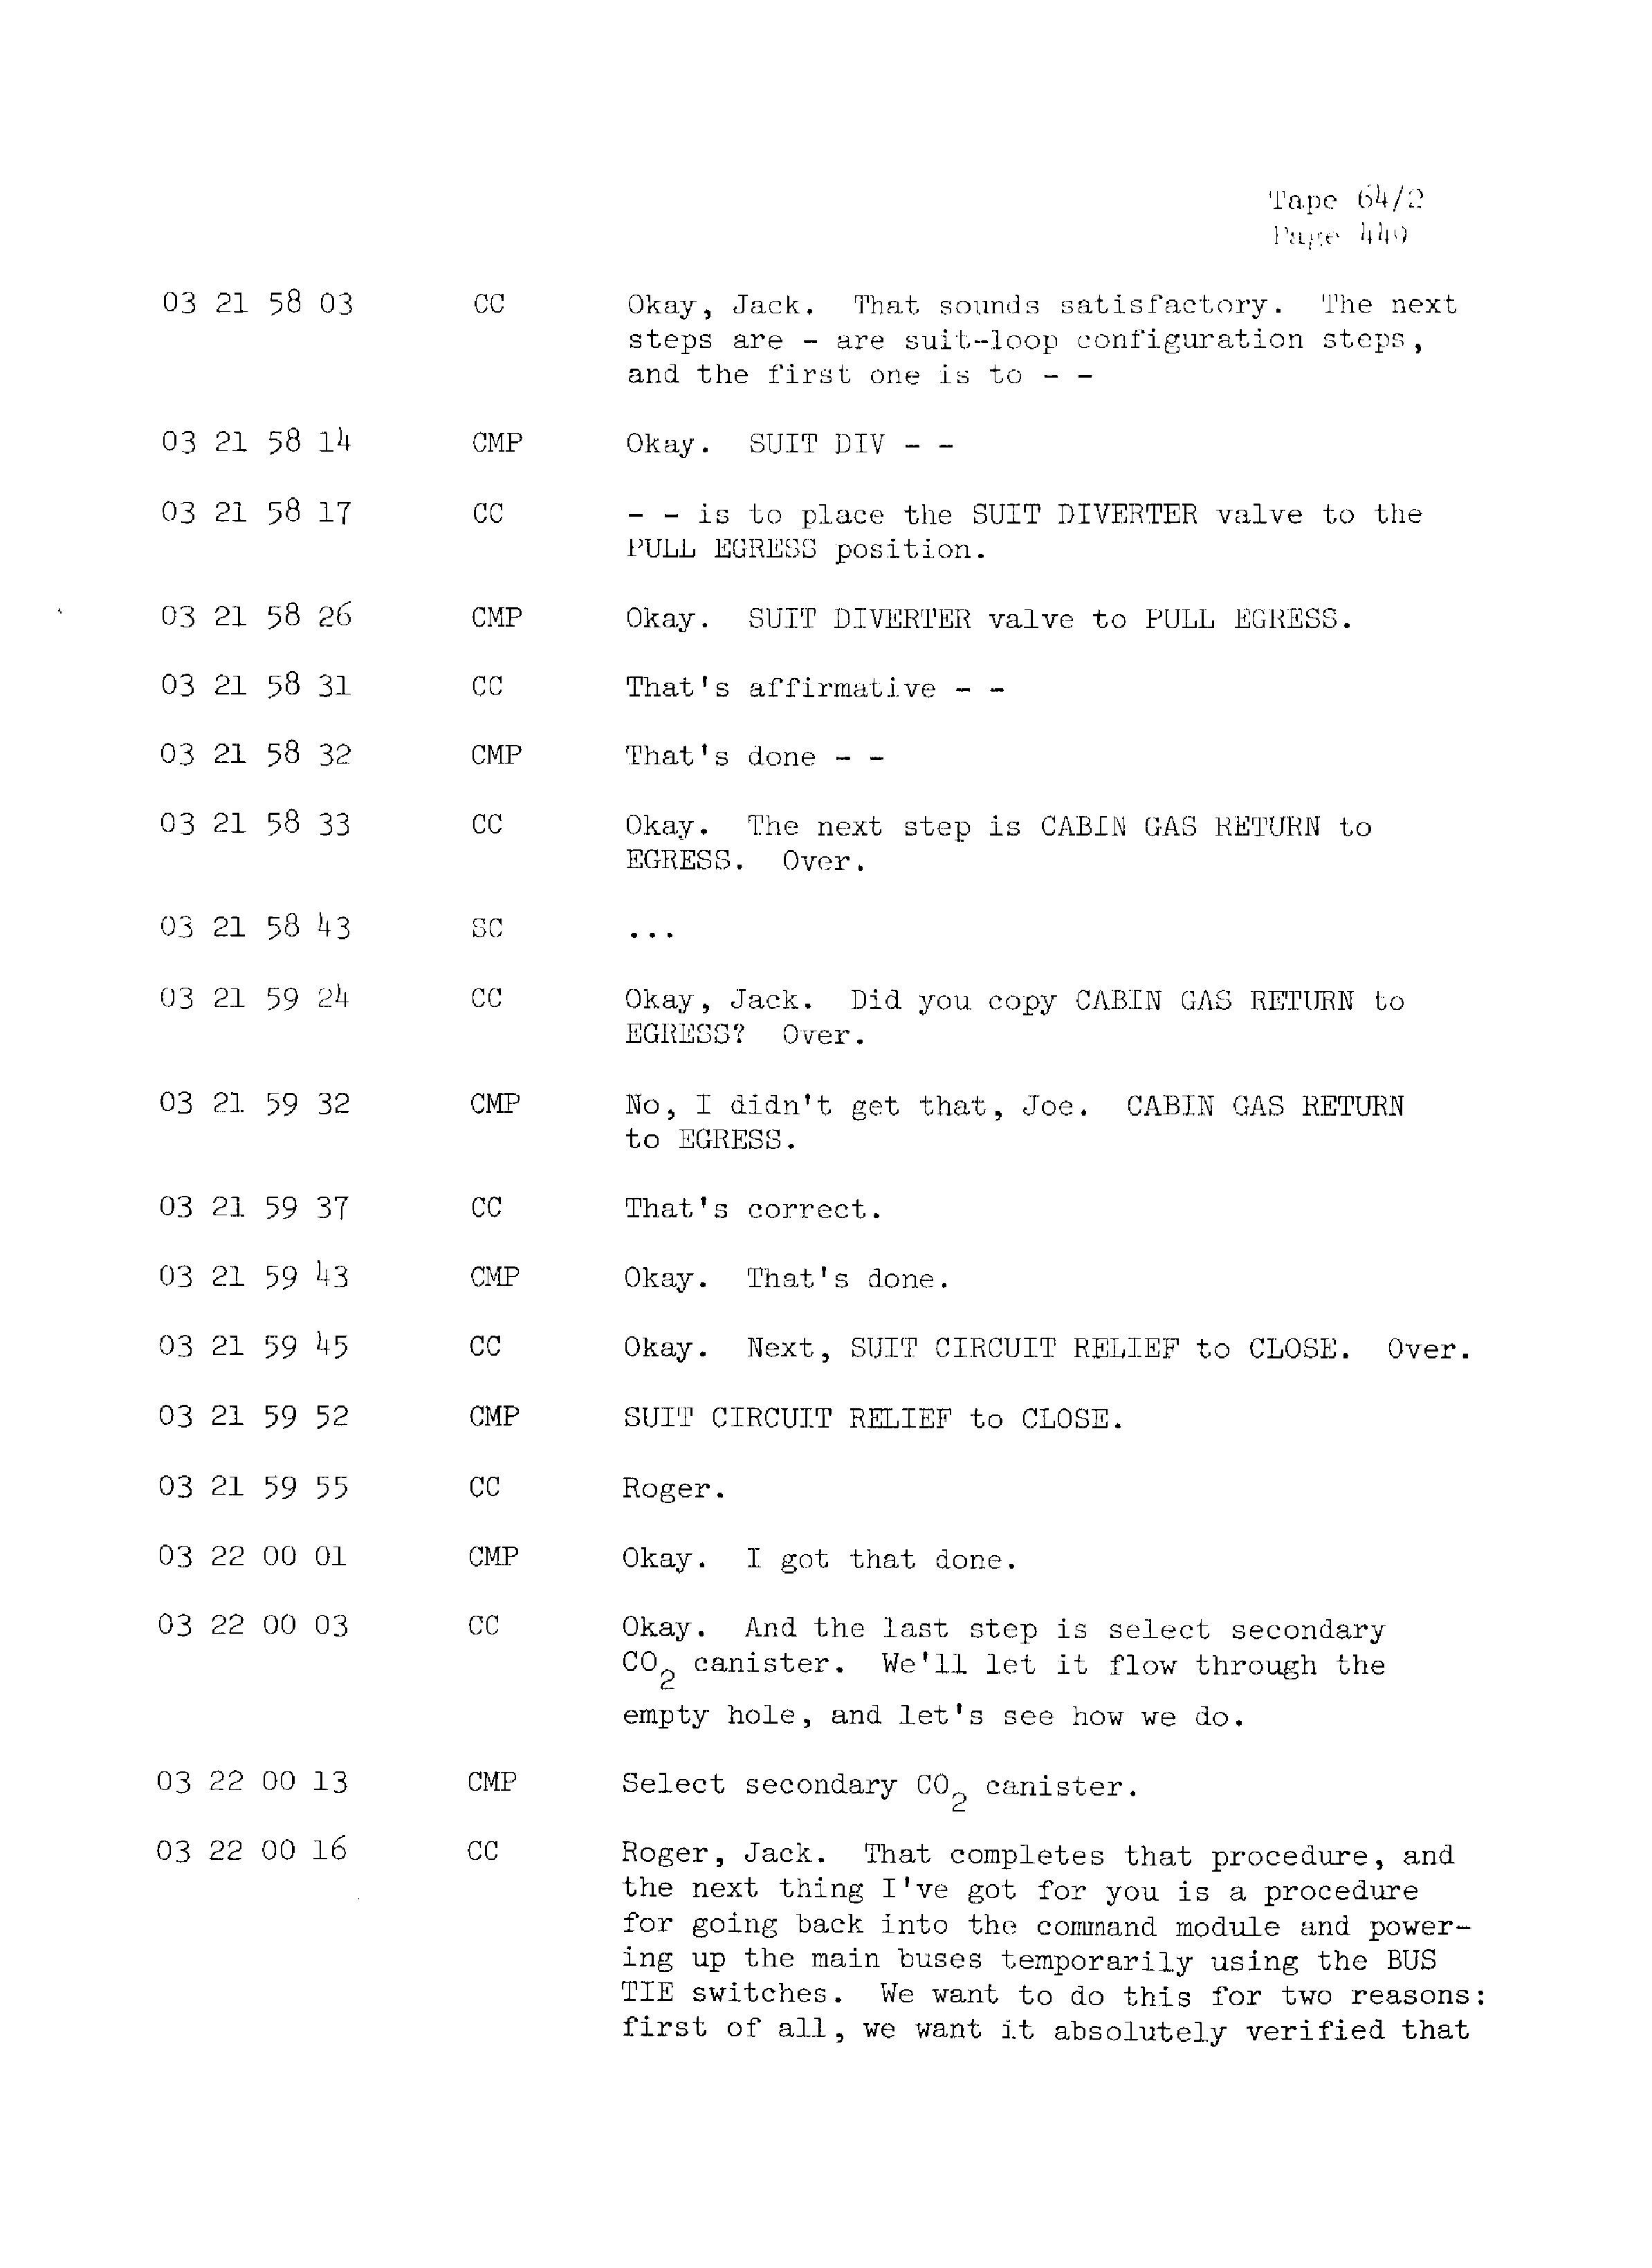 Page 456 of Apollo 13’s original transcript